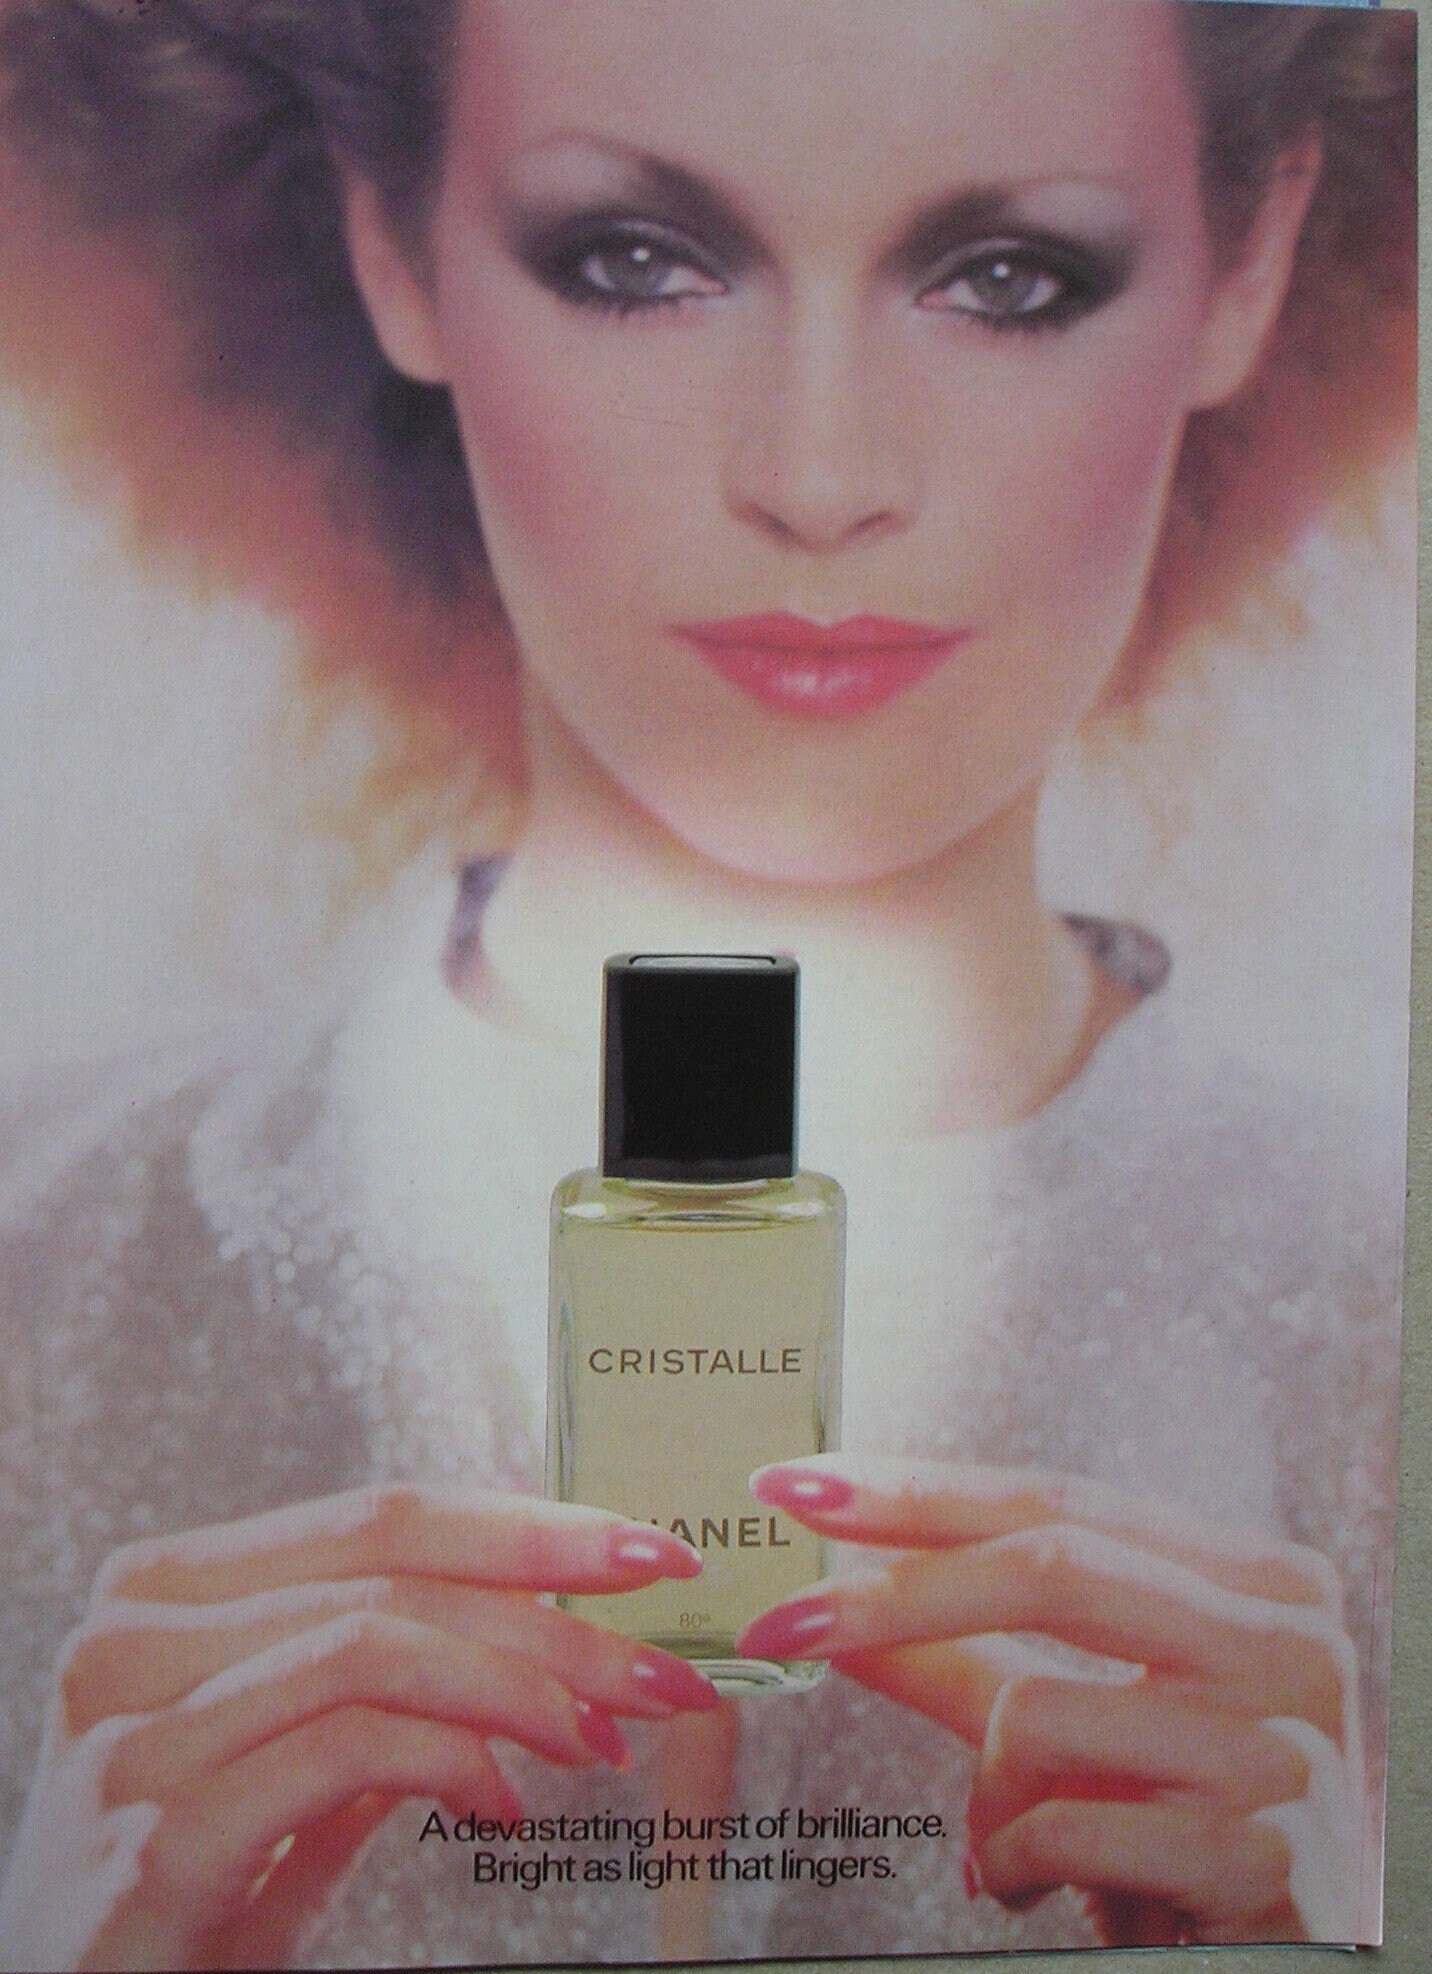 1978 Chanel Cristalle Perfume Ad - Brilliant Burst